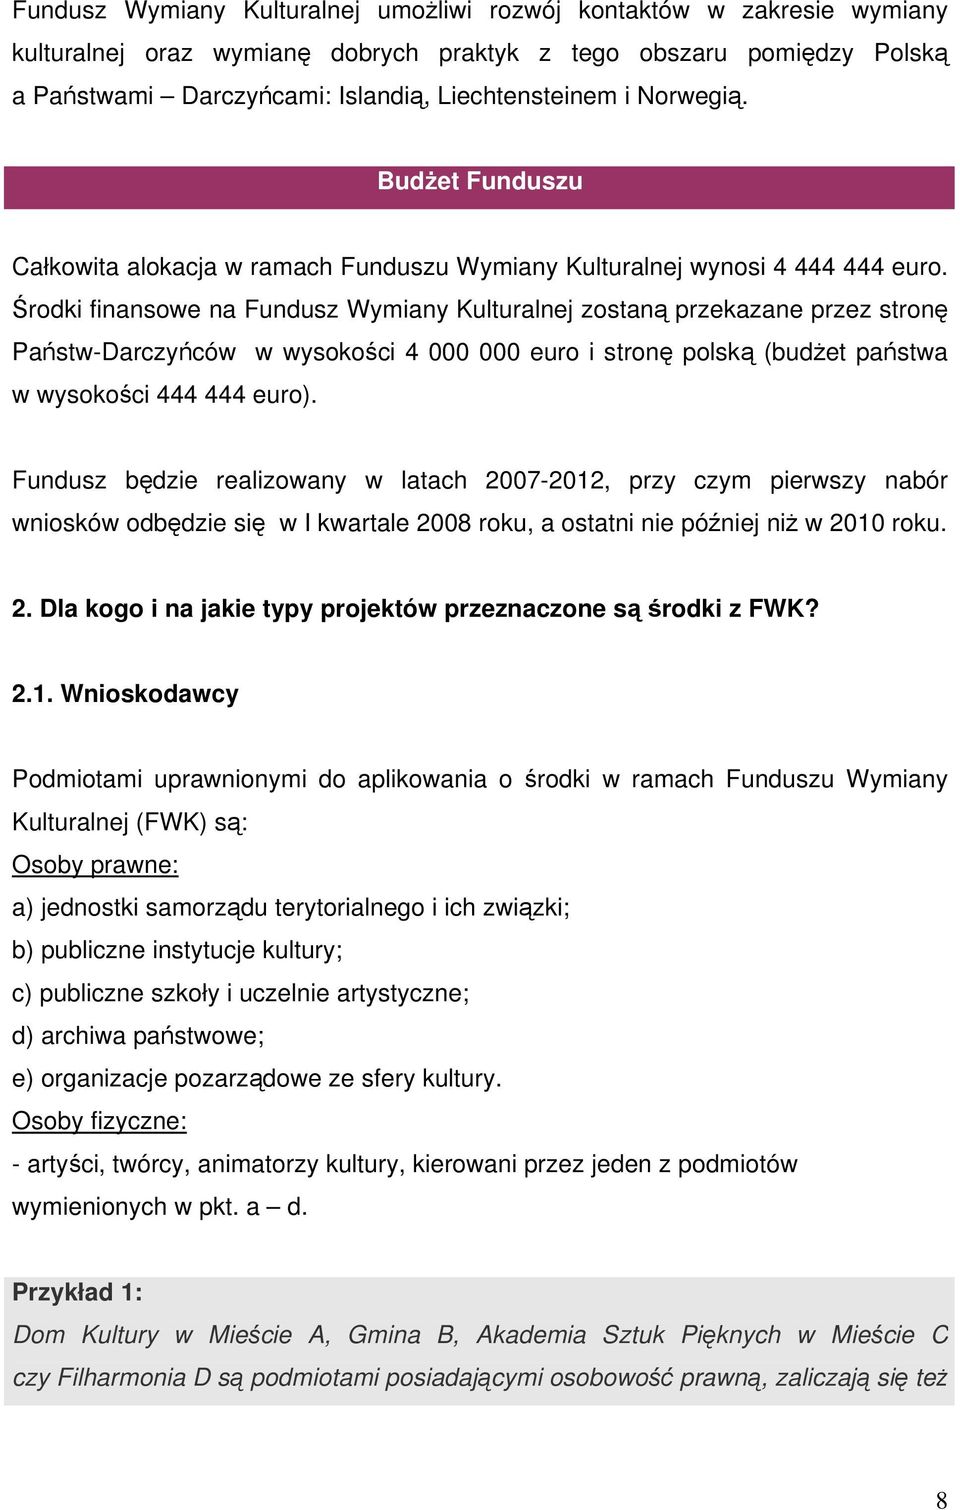 Środki finansowe na Fundusz Wymiany Kulturalnej zostaną przekazane przez stronę Państw-Darczyńców w wysokości 4 000 000 euro i stronę polską (budżet państwa w wysokości 444 444 euro).